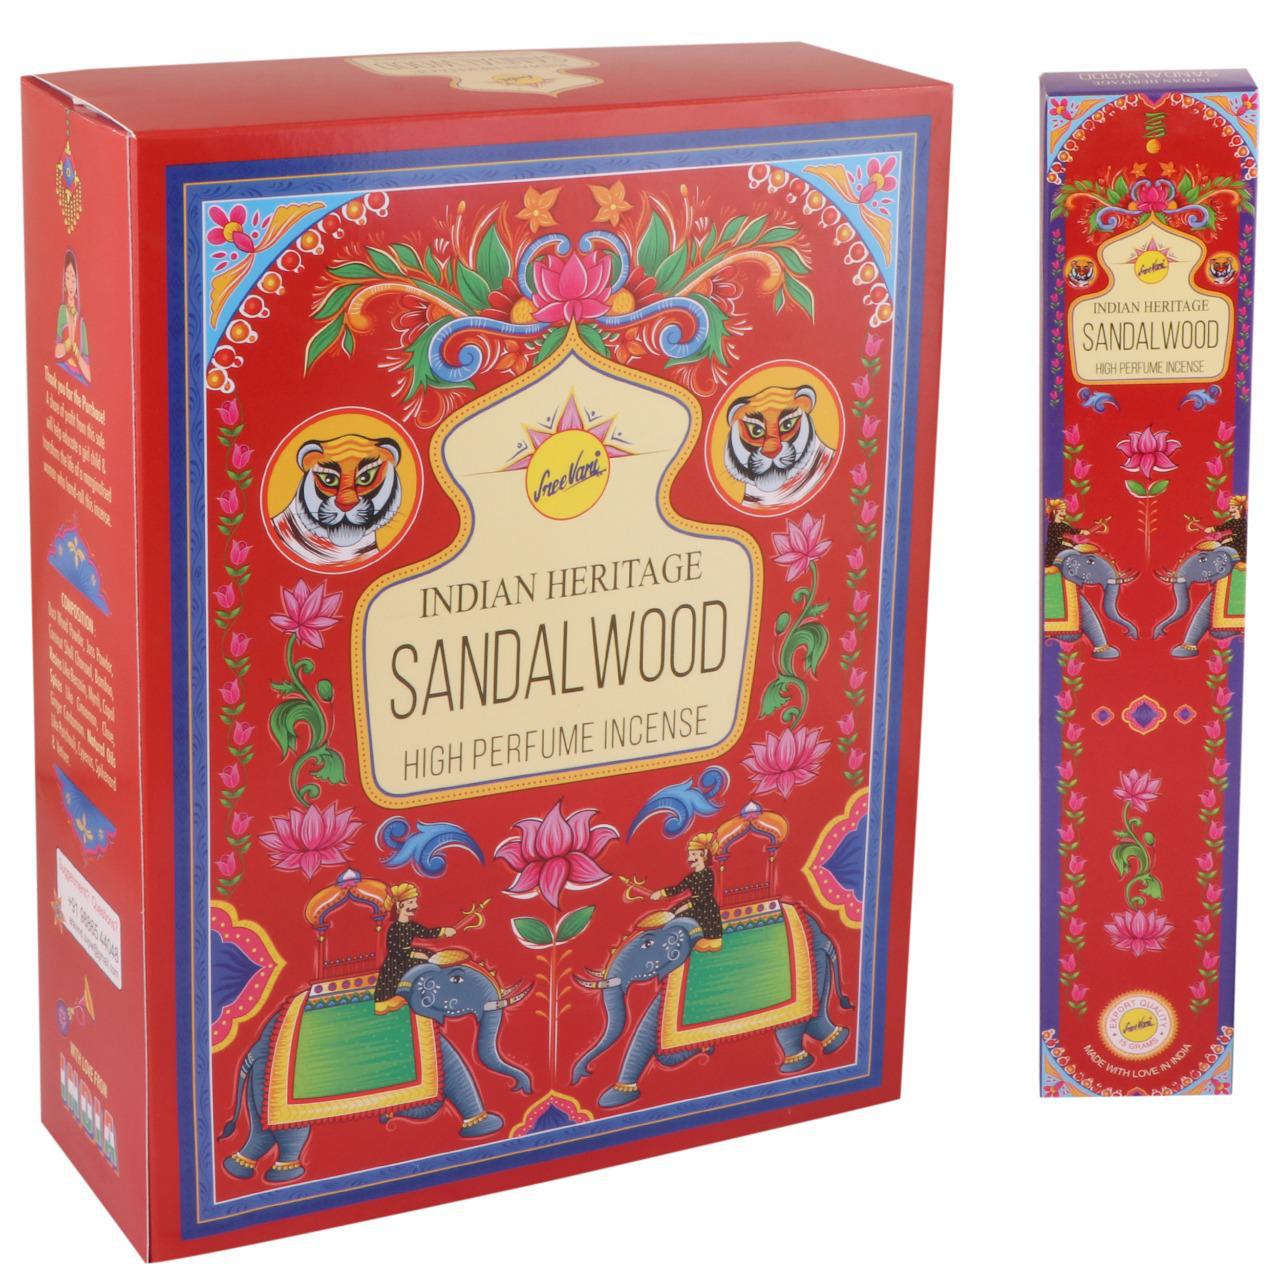 Sandel wood - India Heritage